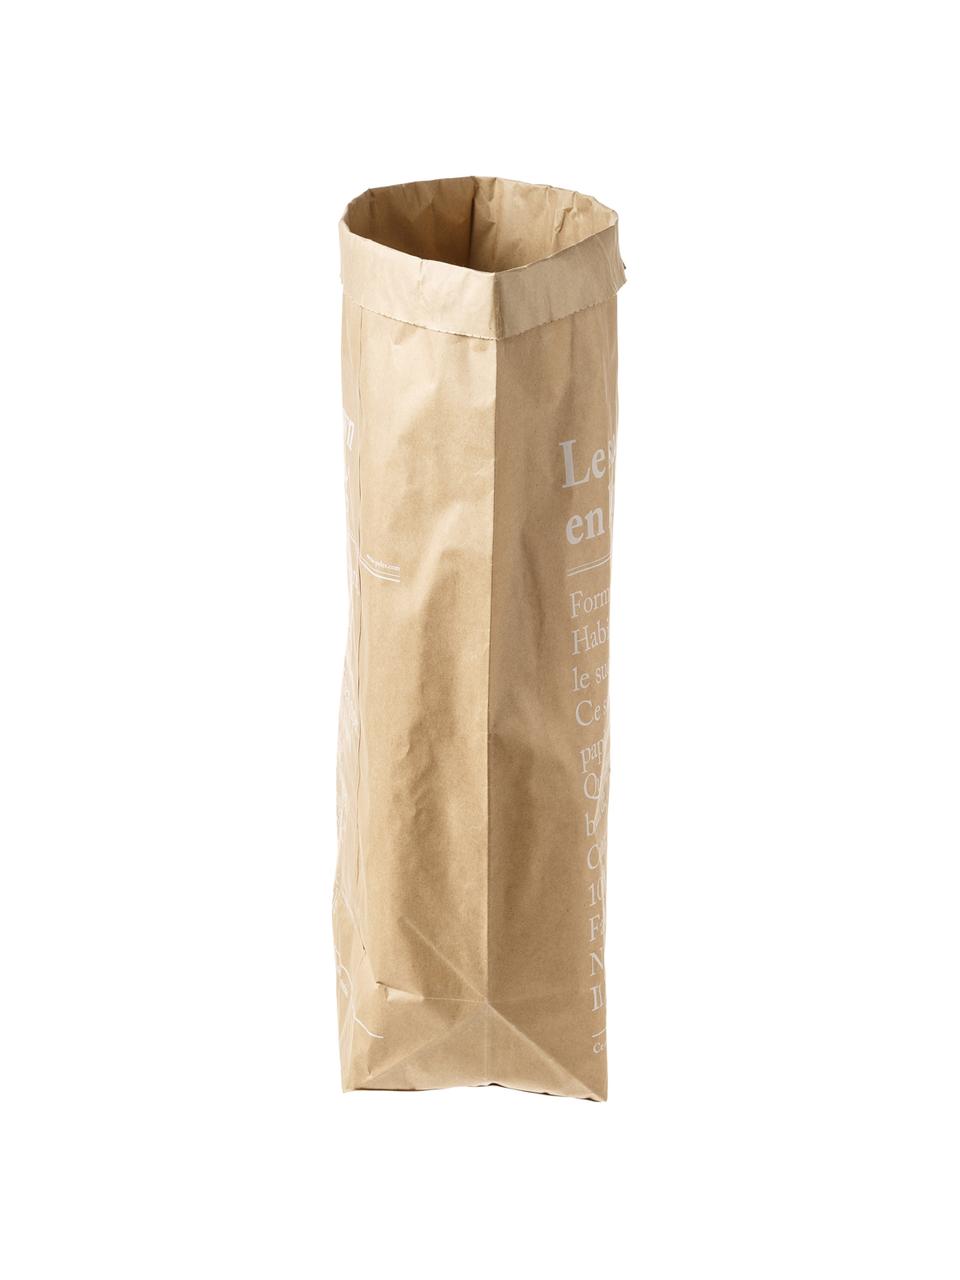 Úložný vak Le sac en kraft brun, Papír z čerstvých vláken, Hnědá, Š 50 cm, V 69 cm